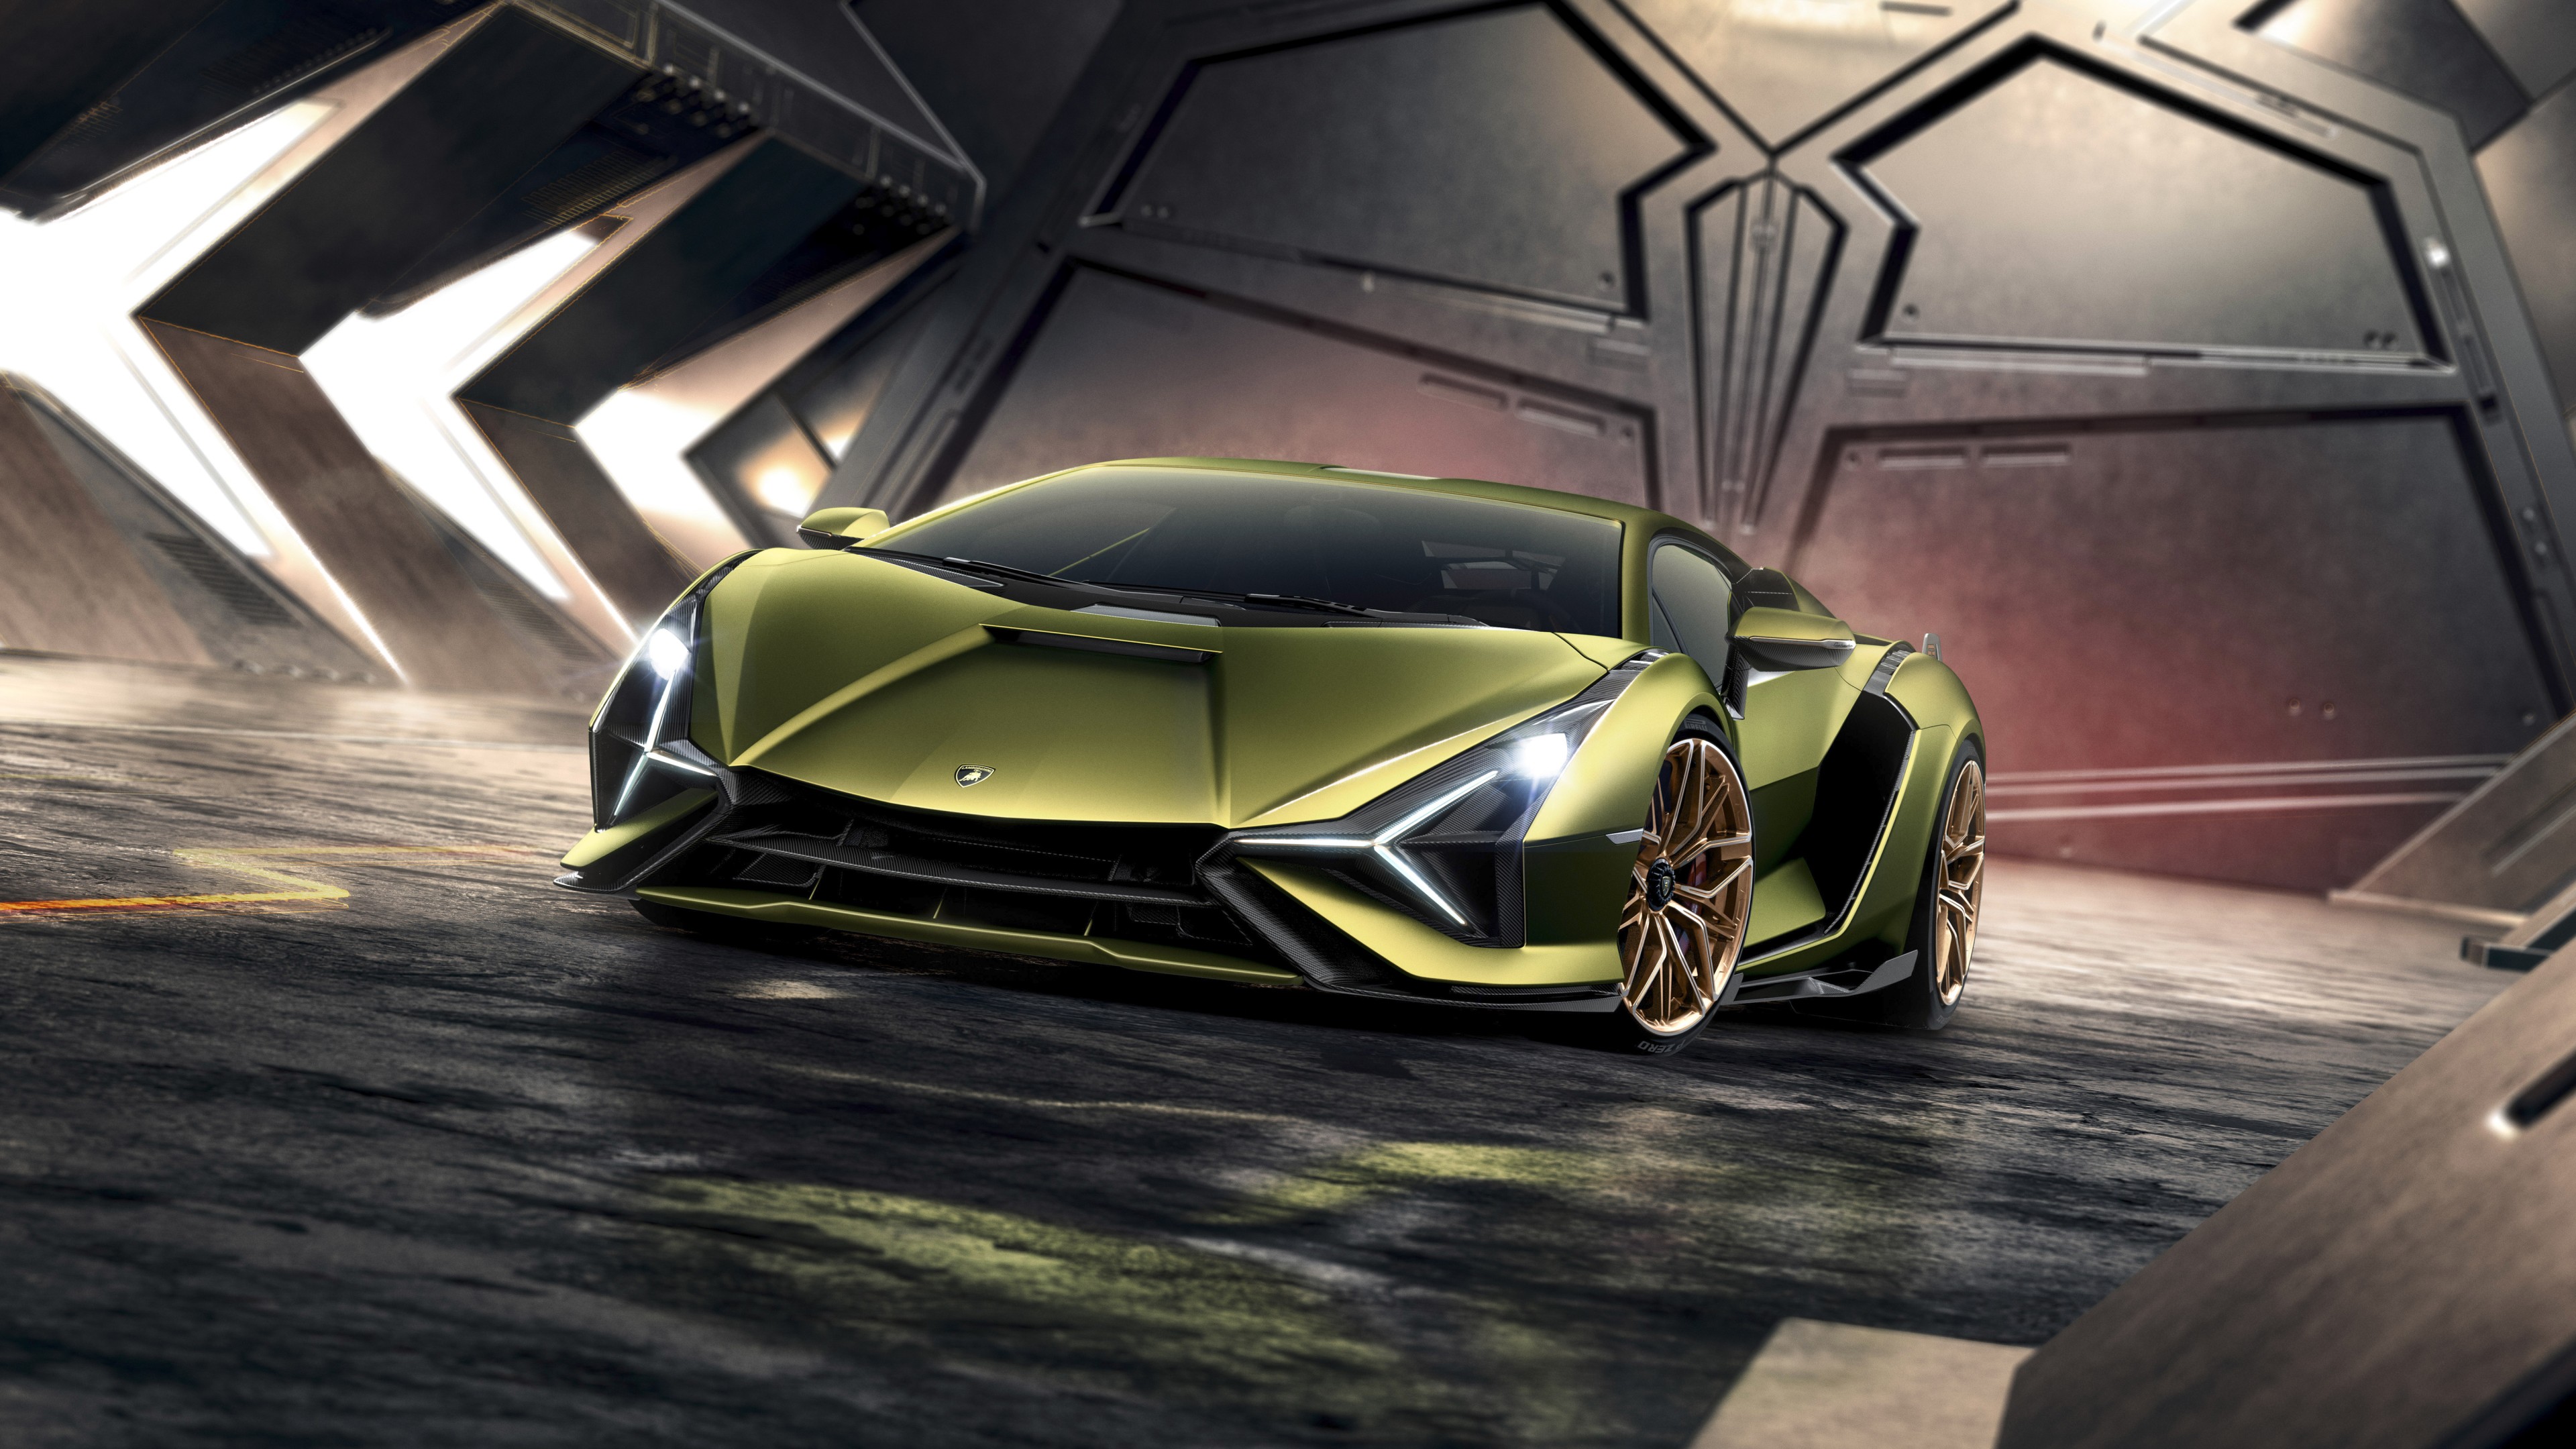 Lamborghini Sian 2019 4K 13 Wallpaper | HD Car Wallpapers | ID #13146